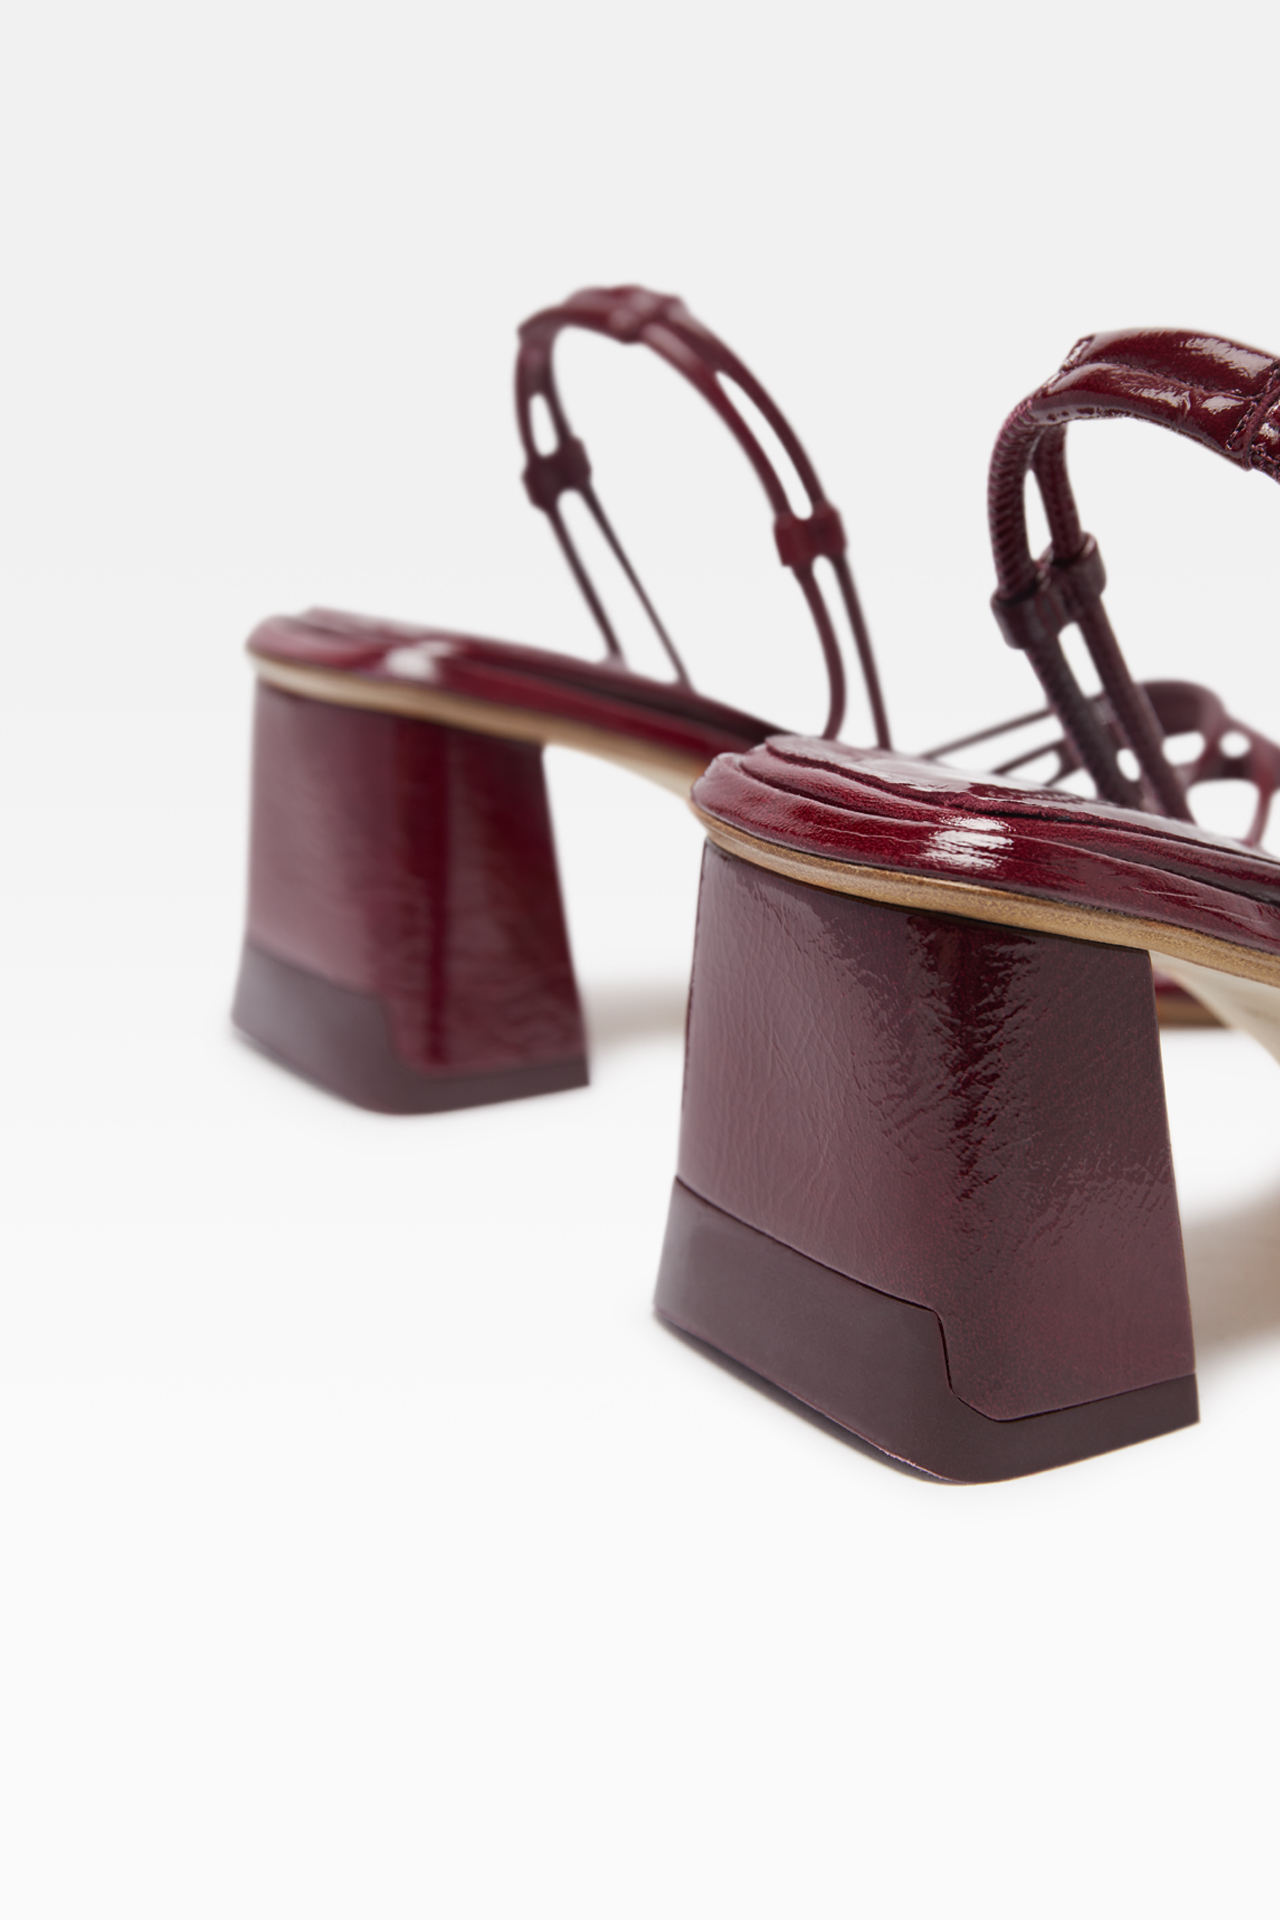 Lydig Stjerne Henholdsvis Angela Burgundy Sandals // Miista Shoes // Made in Spain